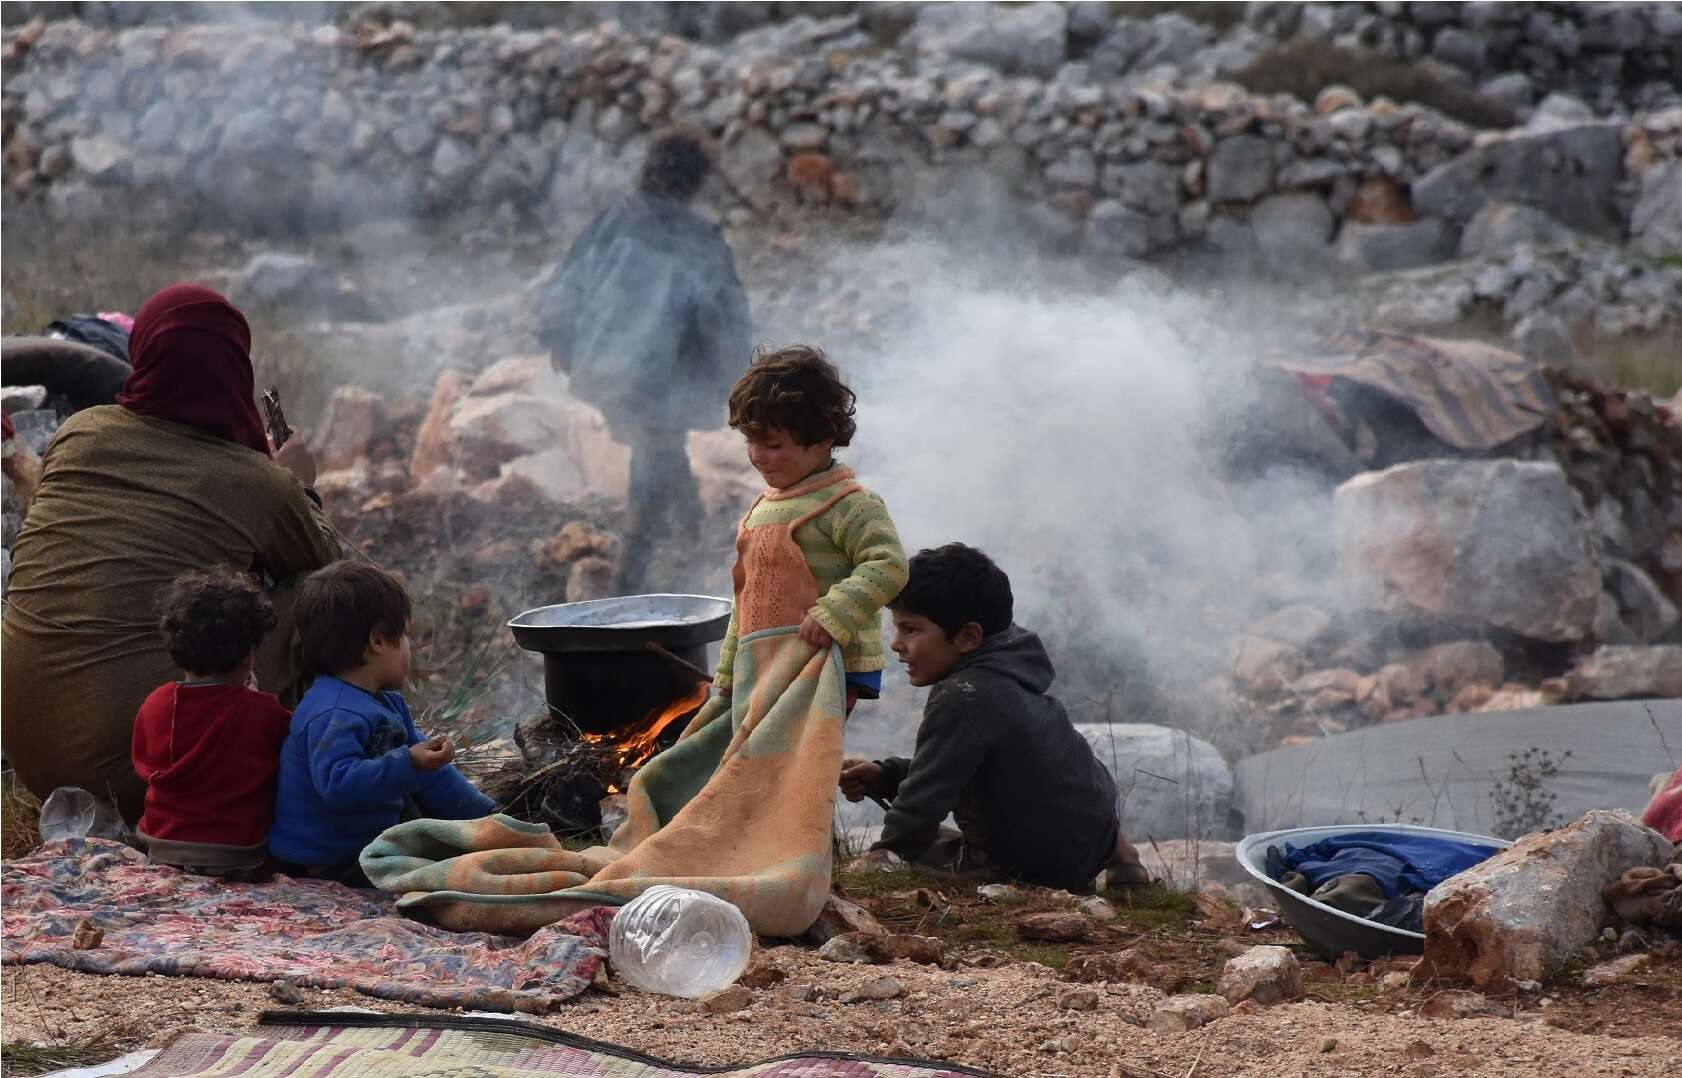 الحد الأدنى للفقر والجوع وتكاليف المعيشة في شمال غرب سوريا